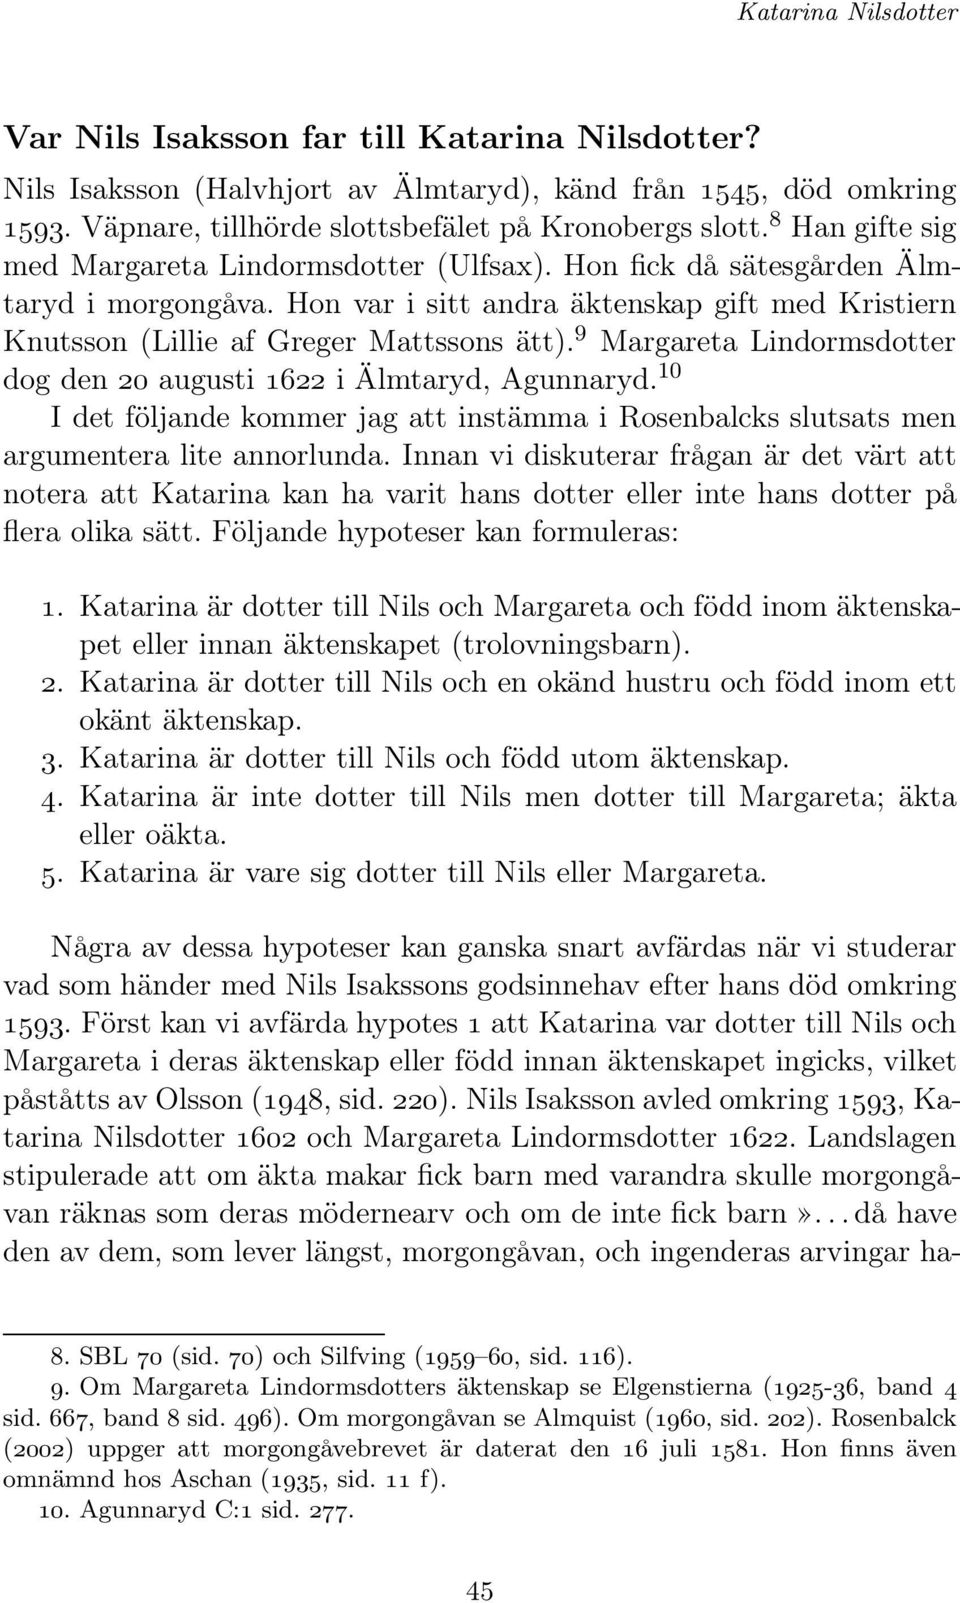 9 Margareta Lindormsdotter dog den 20 augusti 1622 i Älmtaryd, Agunnaryd. 10 IdetföljandekommerjagattinstämmaiRosenbalcksslutsatsmen argumentera lite annorlunda.